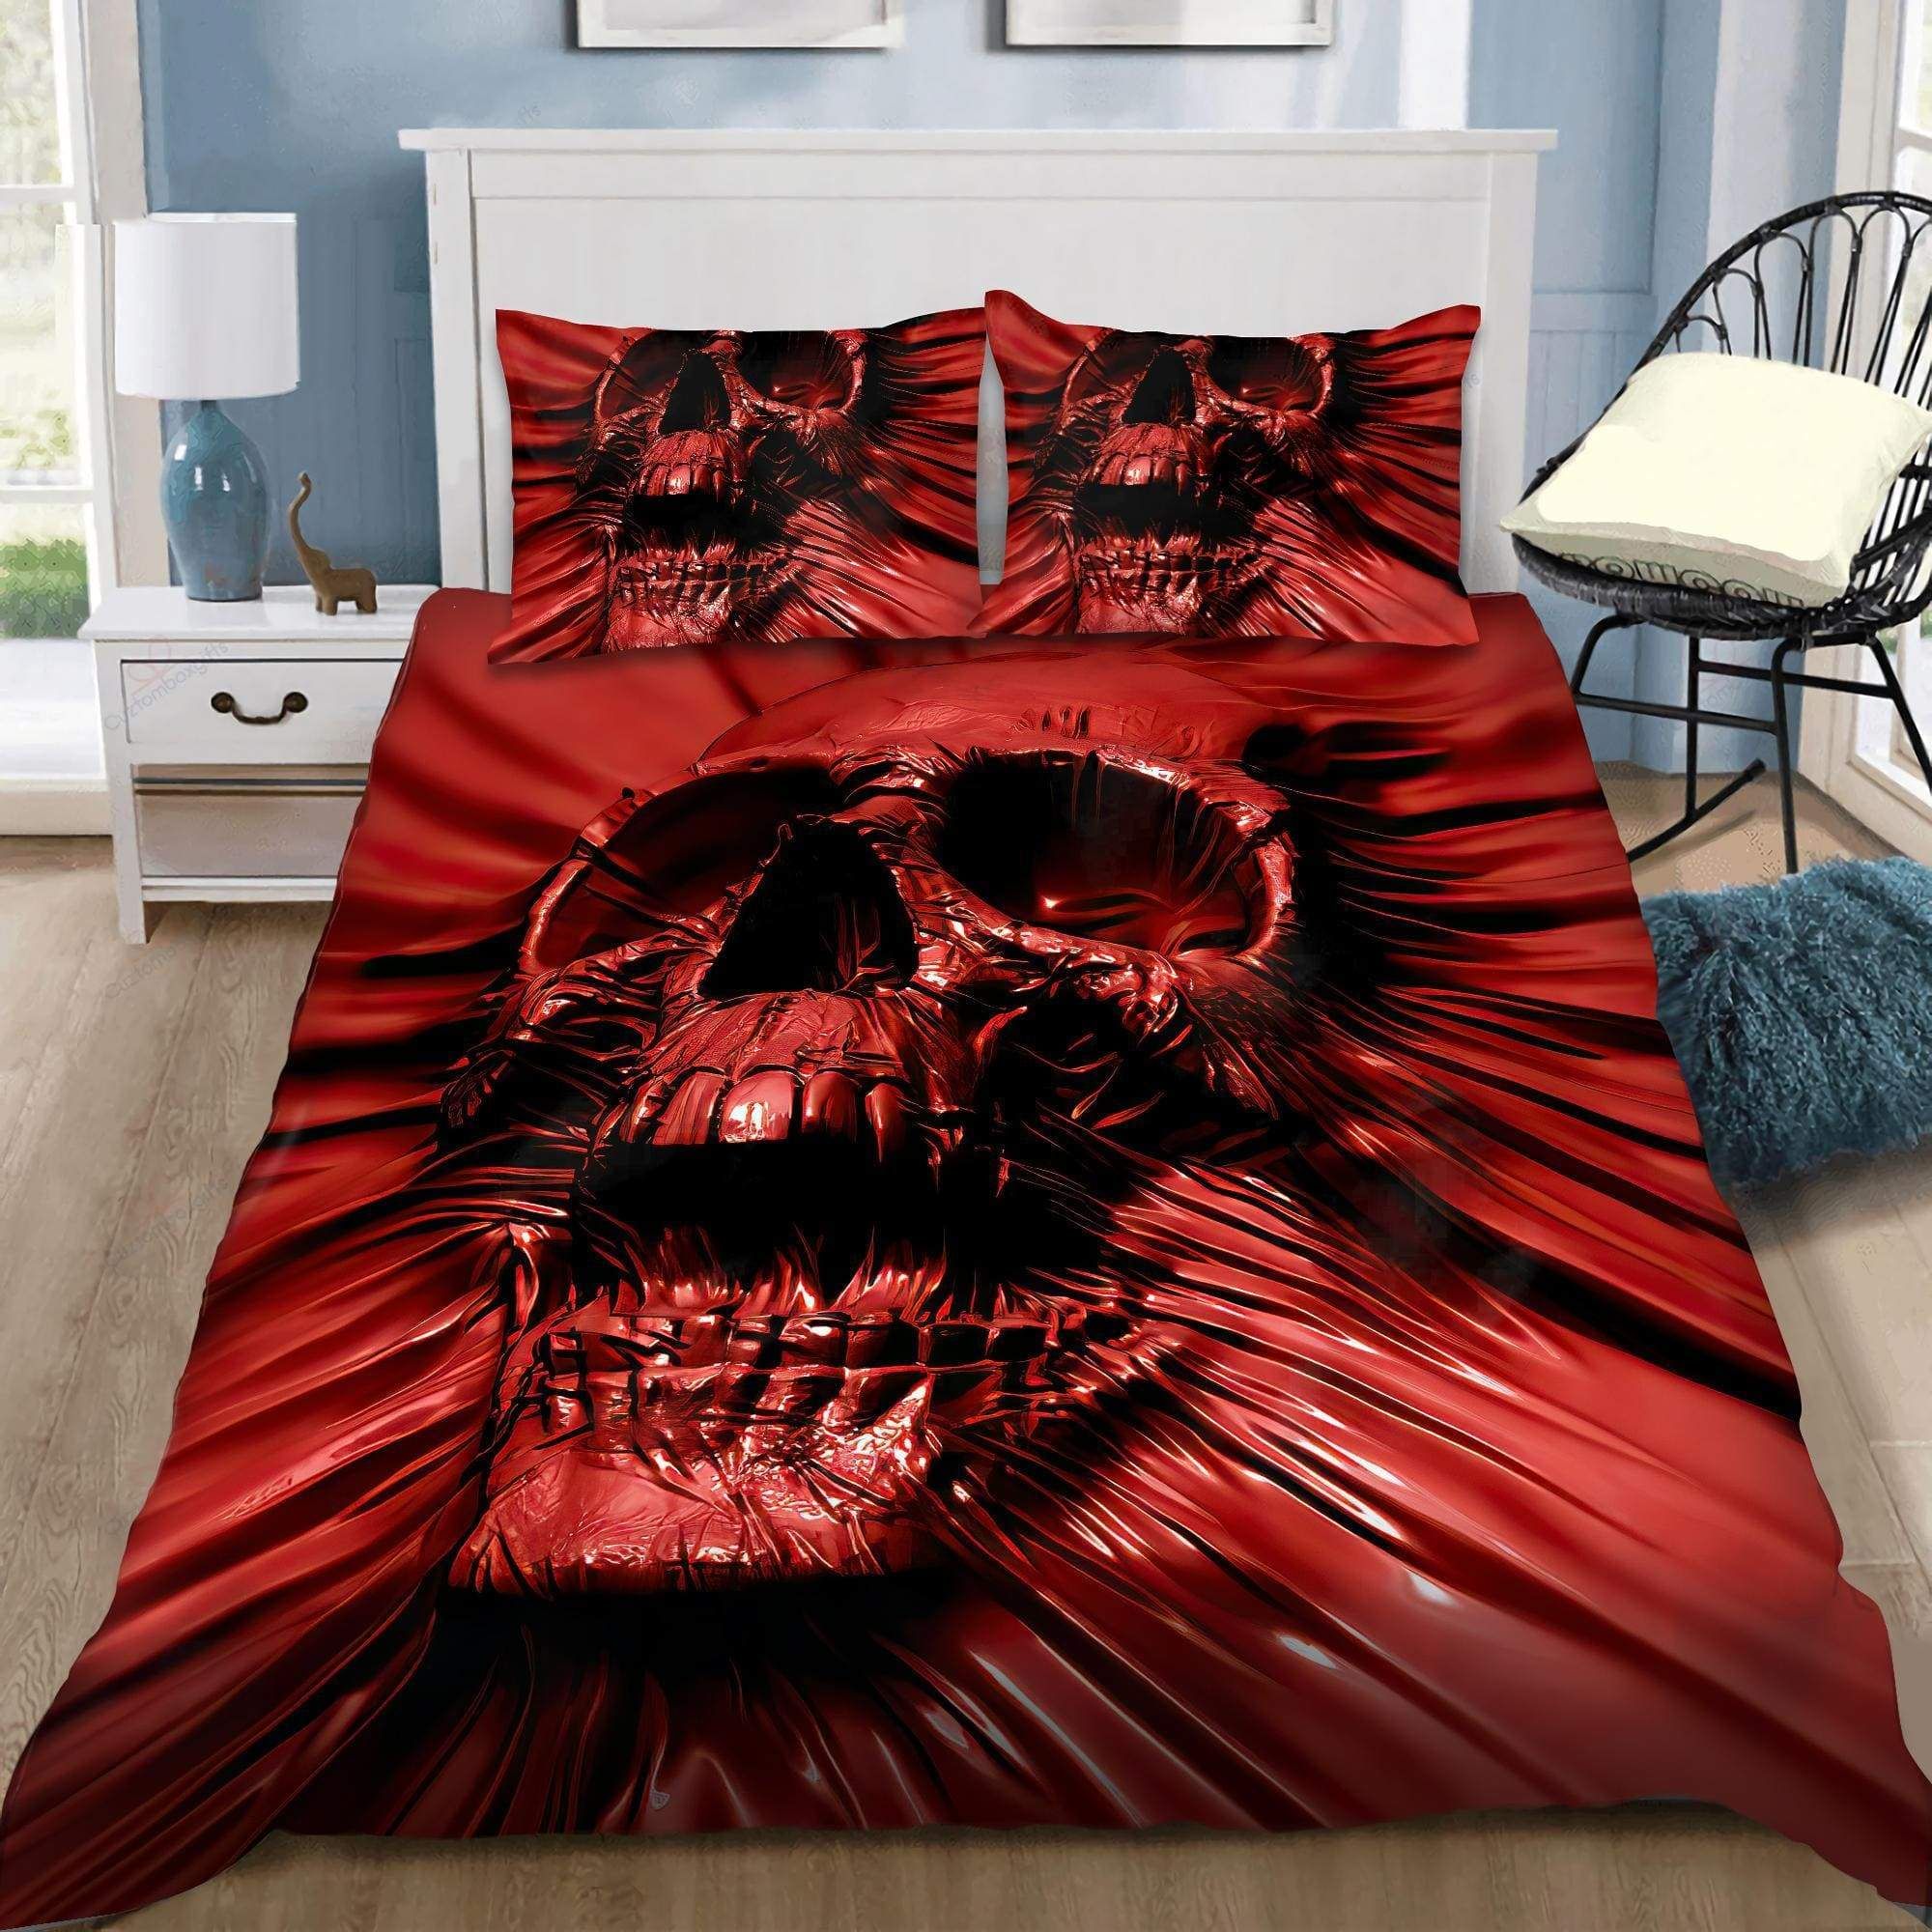 Red Screaming Skull Duvet Cover Bedding Set